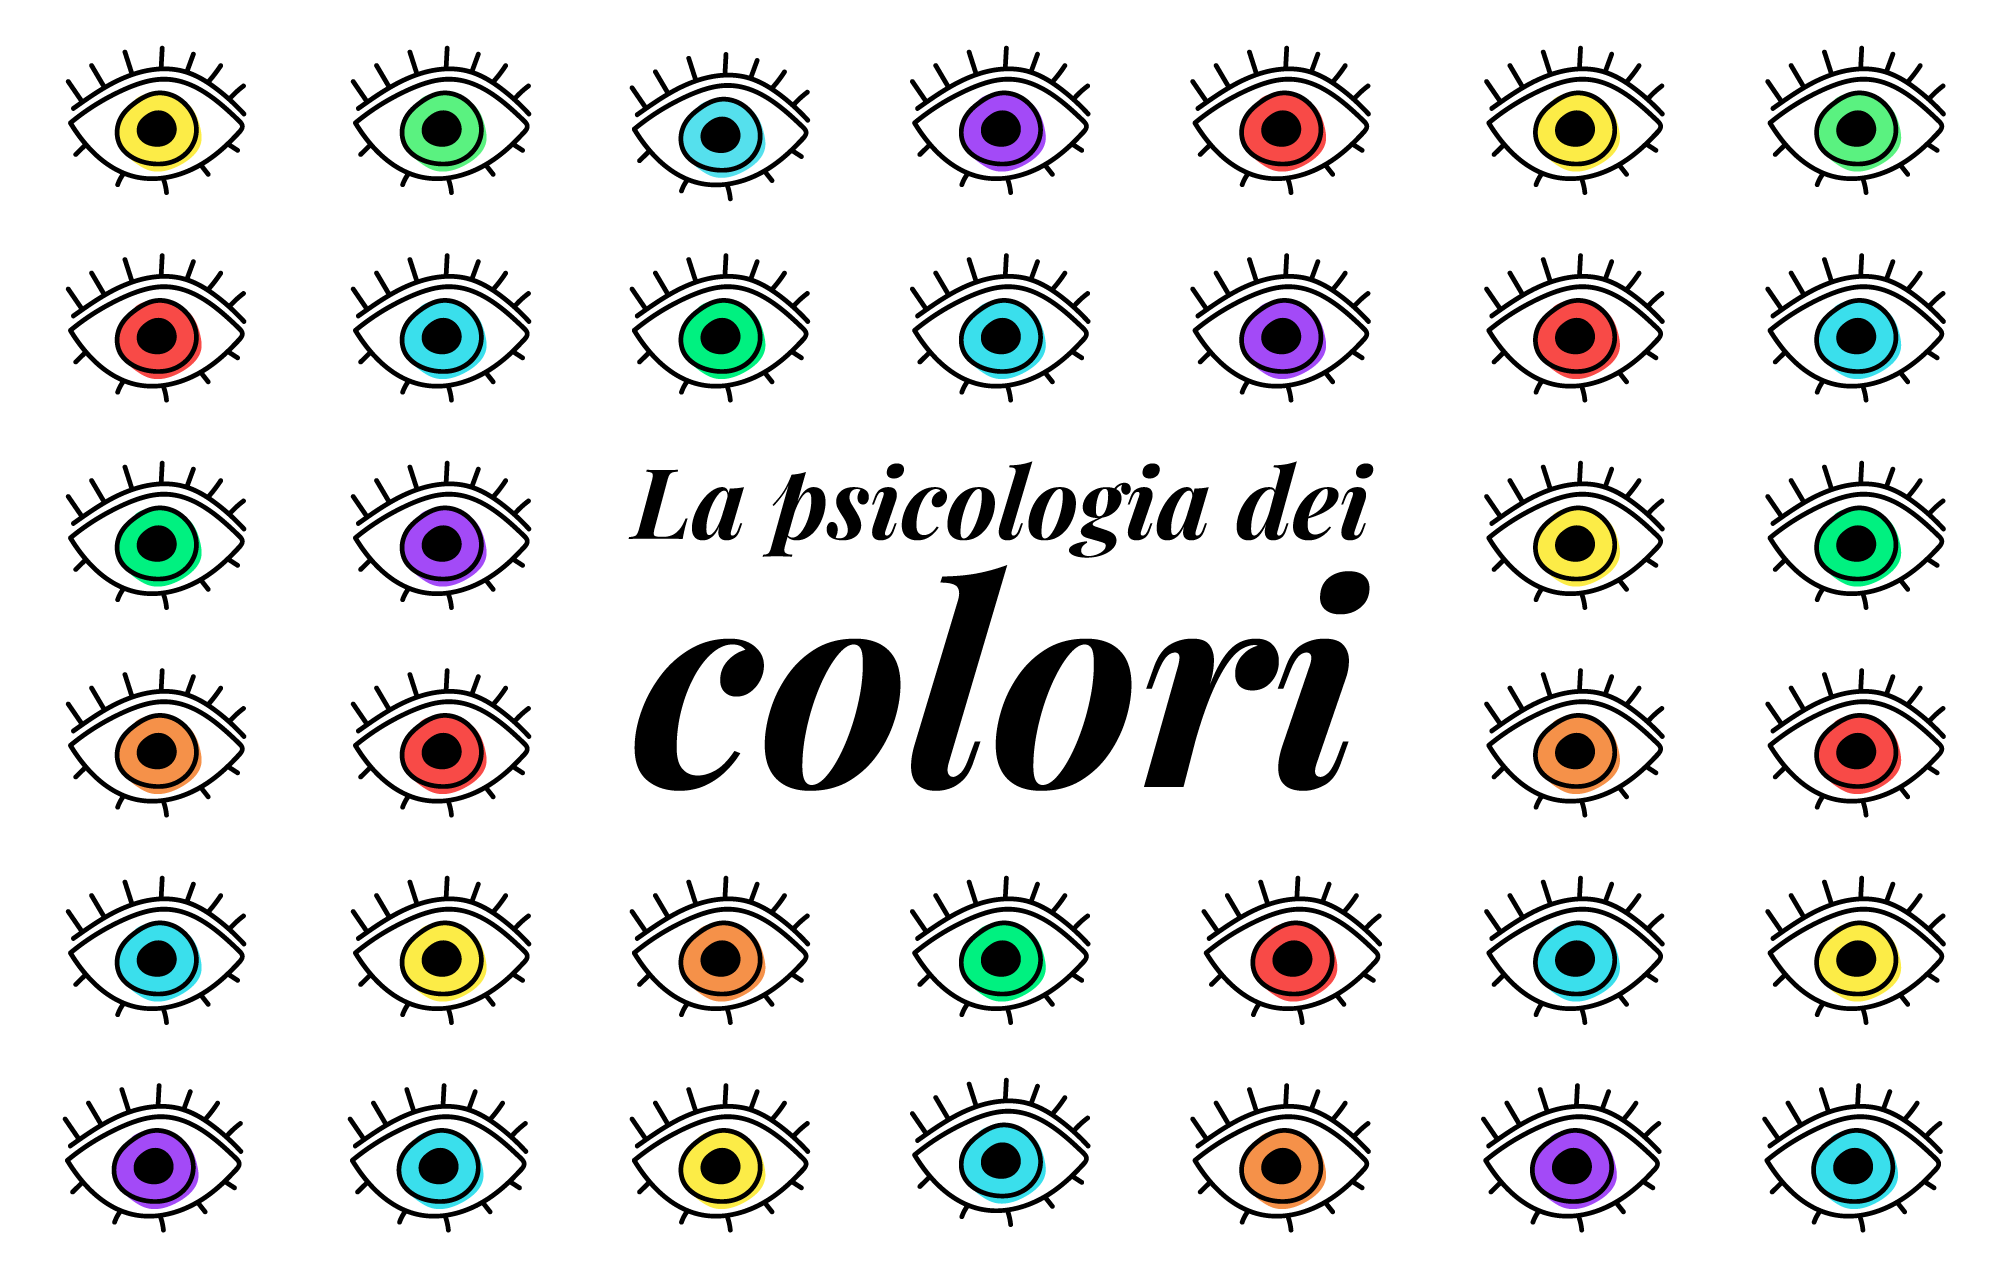 La psicologia dei colori: il loro significato che influenza i consumatori